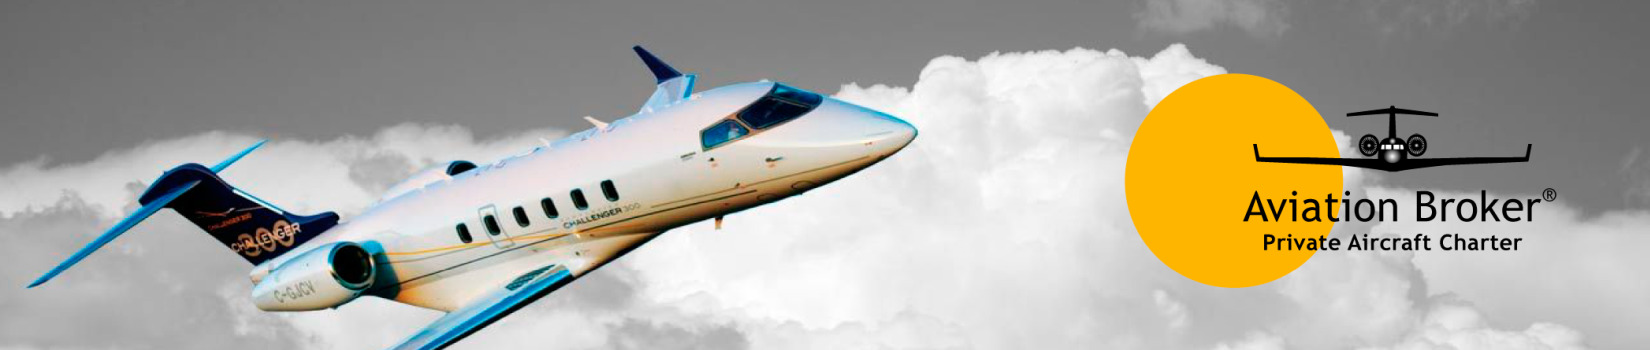 Aviation Broker Charter Broker